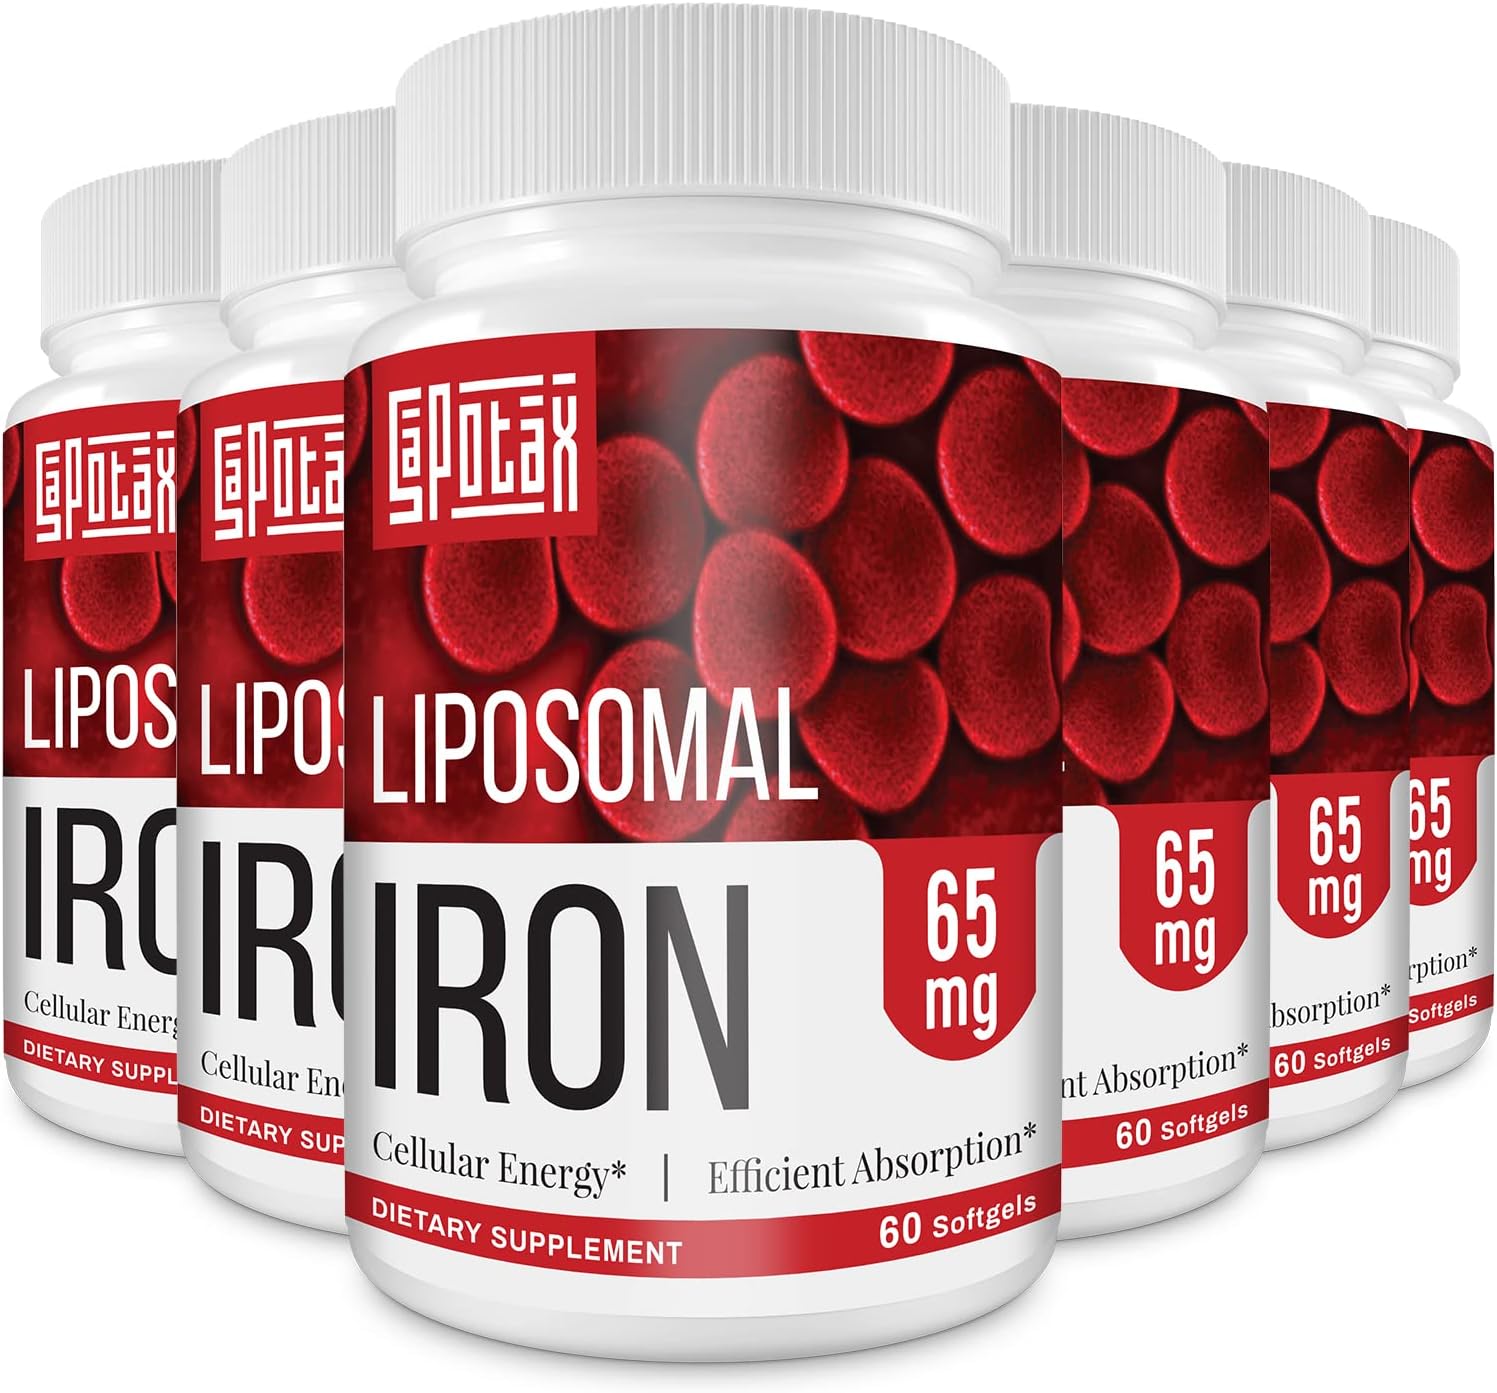 Liposomal Fe Iron Supplement for Women,65 mg Iron 